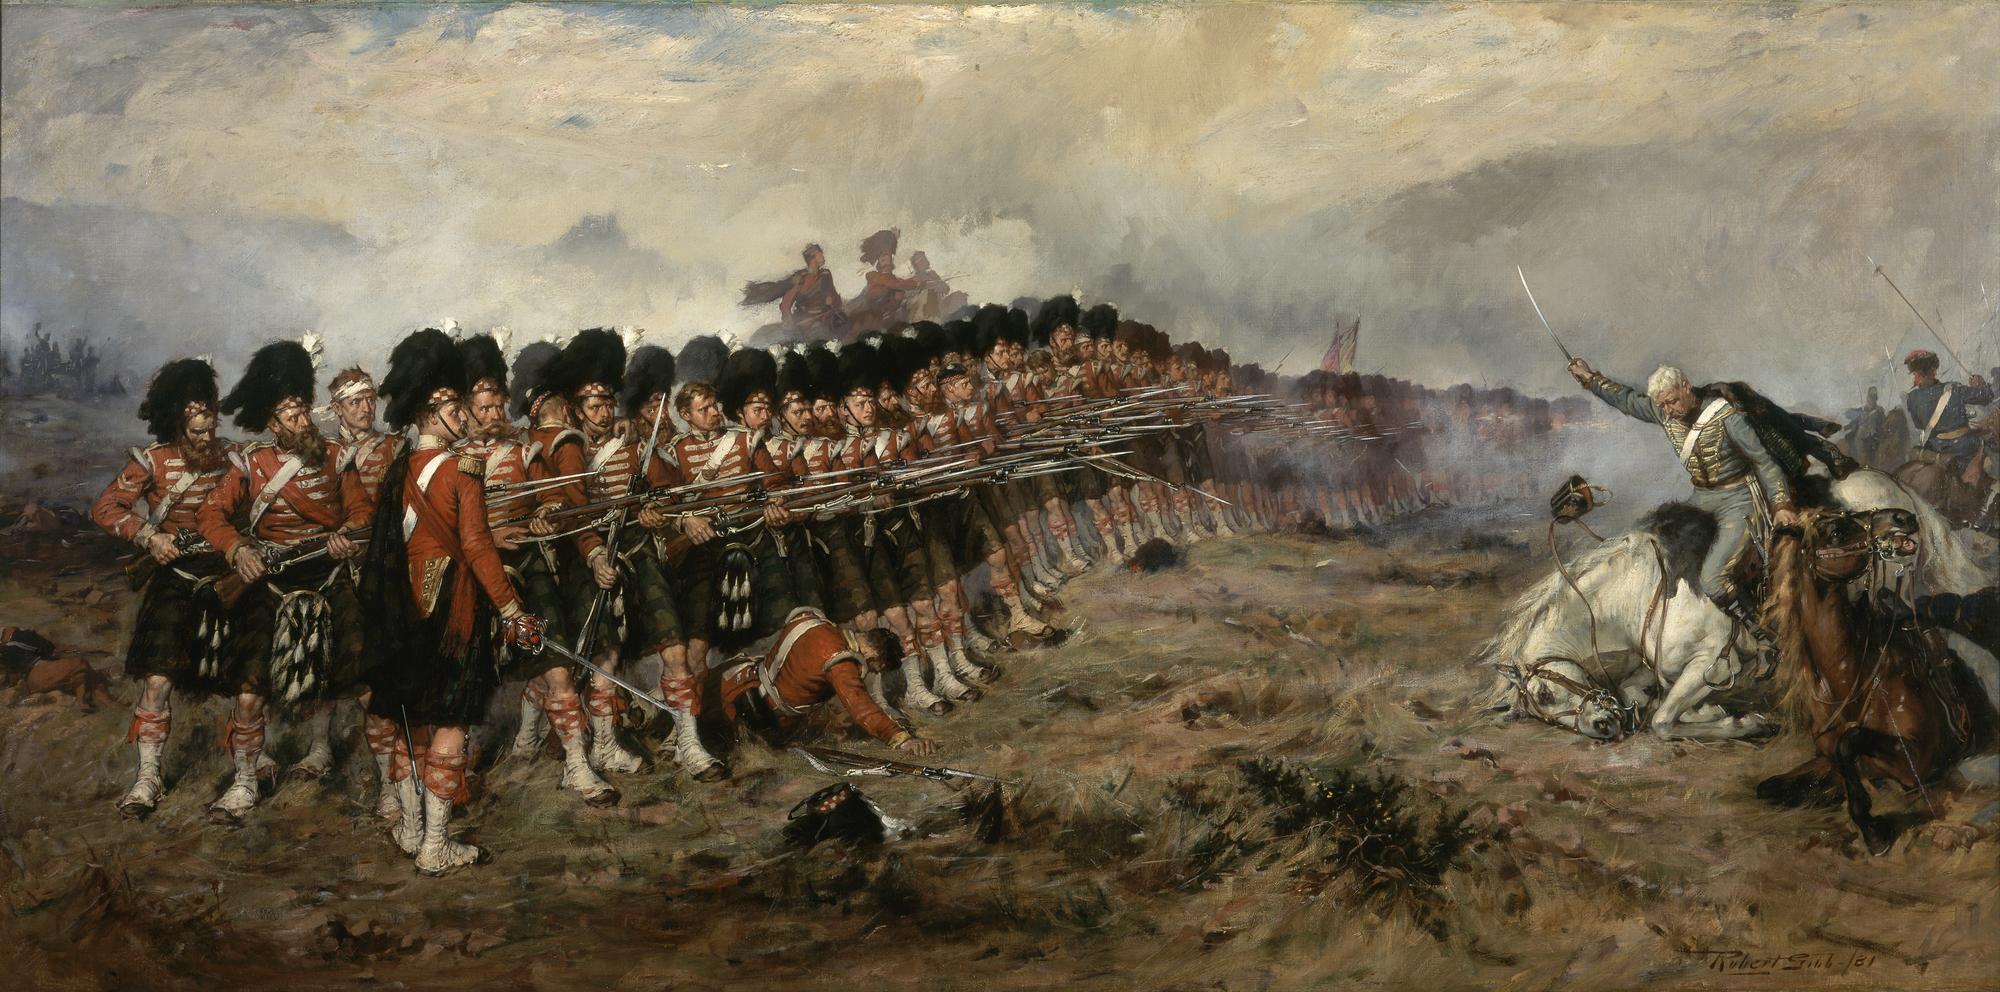 „Cienka czerwona linia”. Żołnierze 93. Pułku Szkockiego odpierają rosyjską szarżę. Obraz z konca XIX wieku